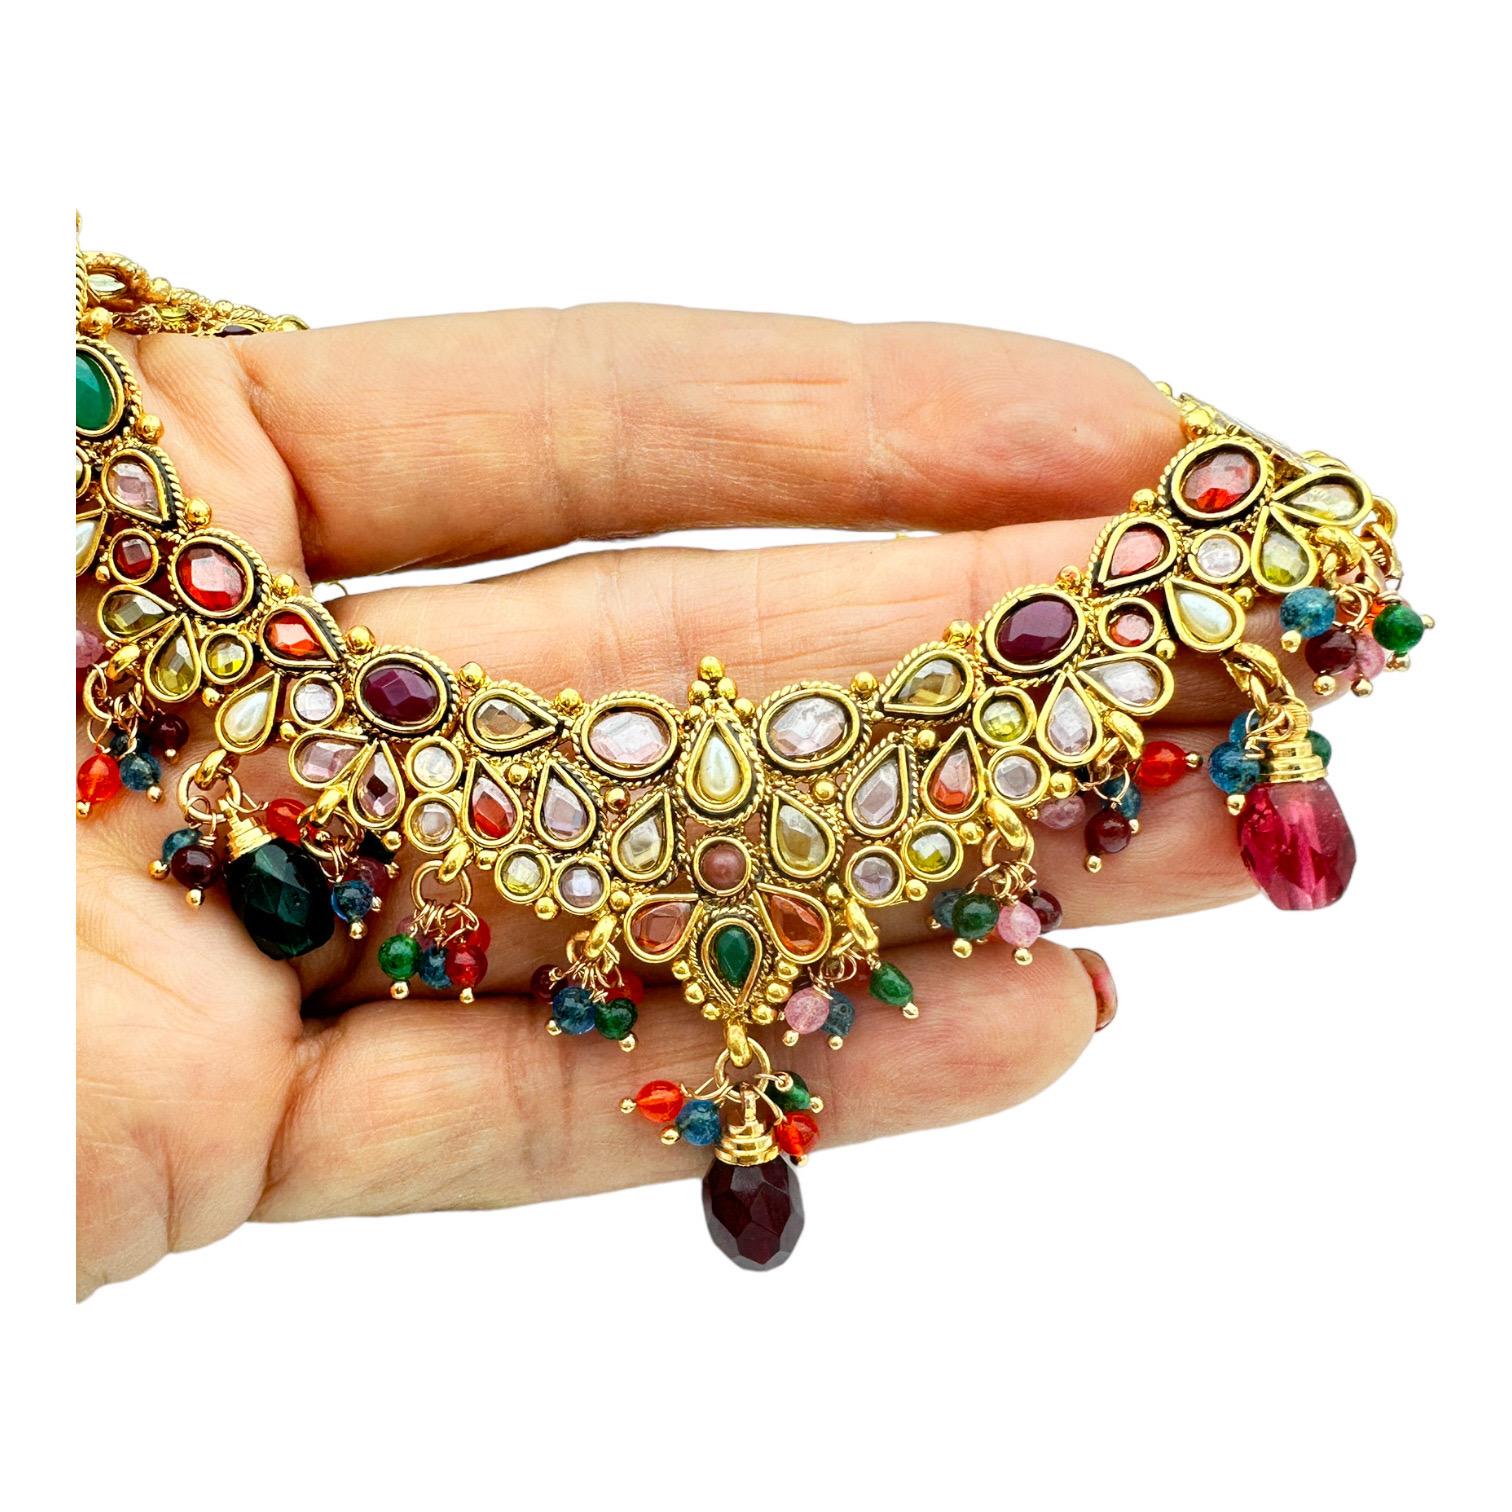 Verleihen Sie Ihrem Look mit der ägyptischen Halskette einen Hauch von Luxus. Dieses verschnörkelte Halsband zeichnet sich durch ein exquisites, handgefertigtes Design aus, das durch die Verwendung von Farbe zu einem wahrhaft einzigartigen Stück